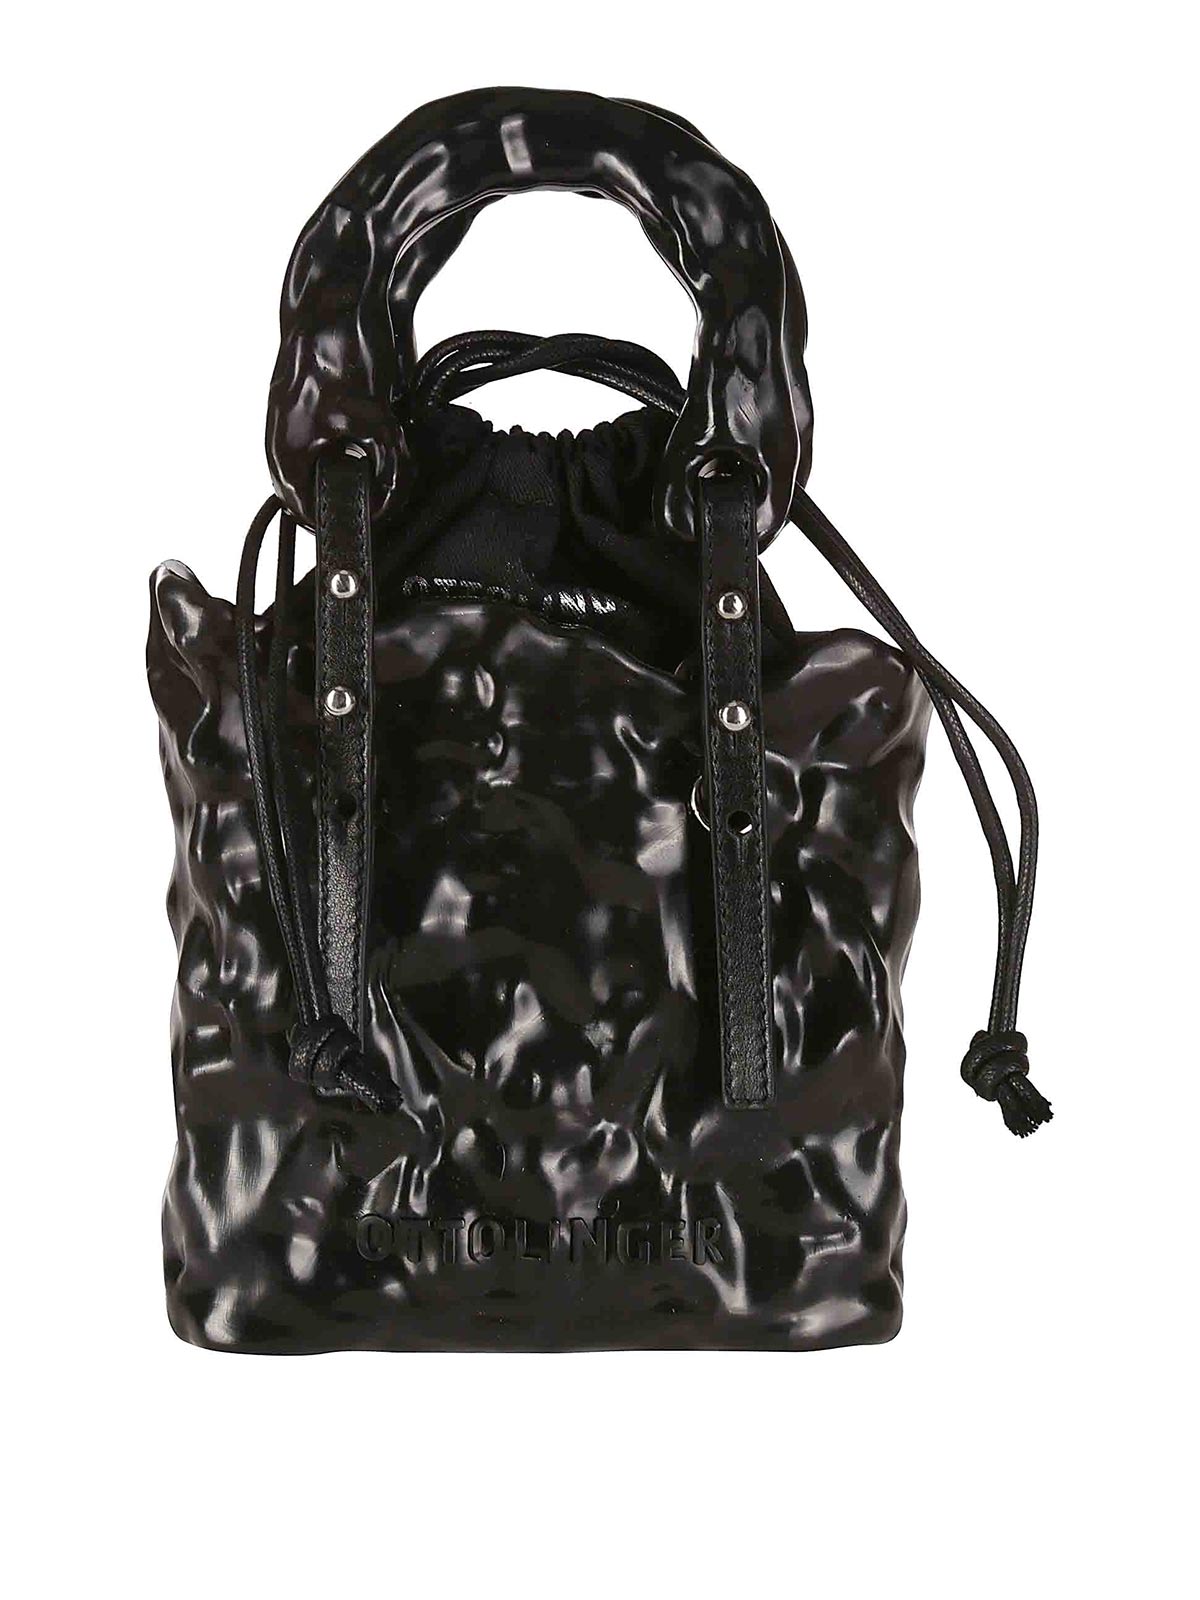 Ottolinger Signature Ceramic Bag In Black